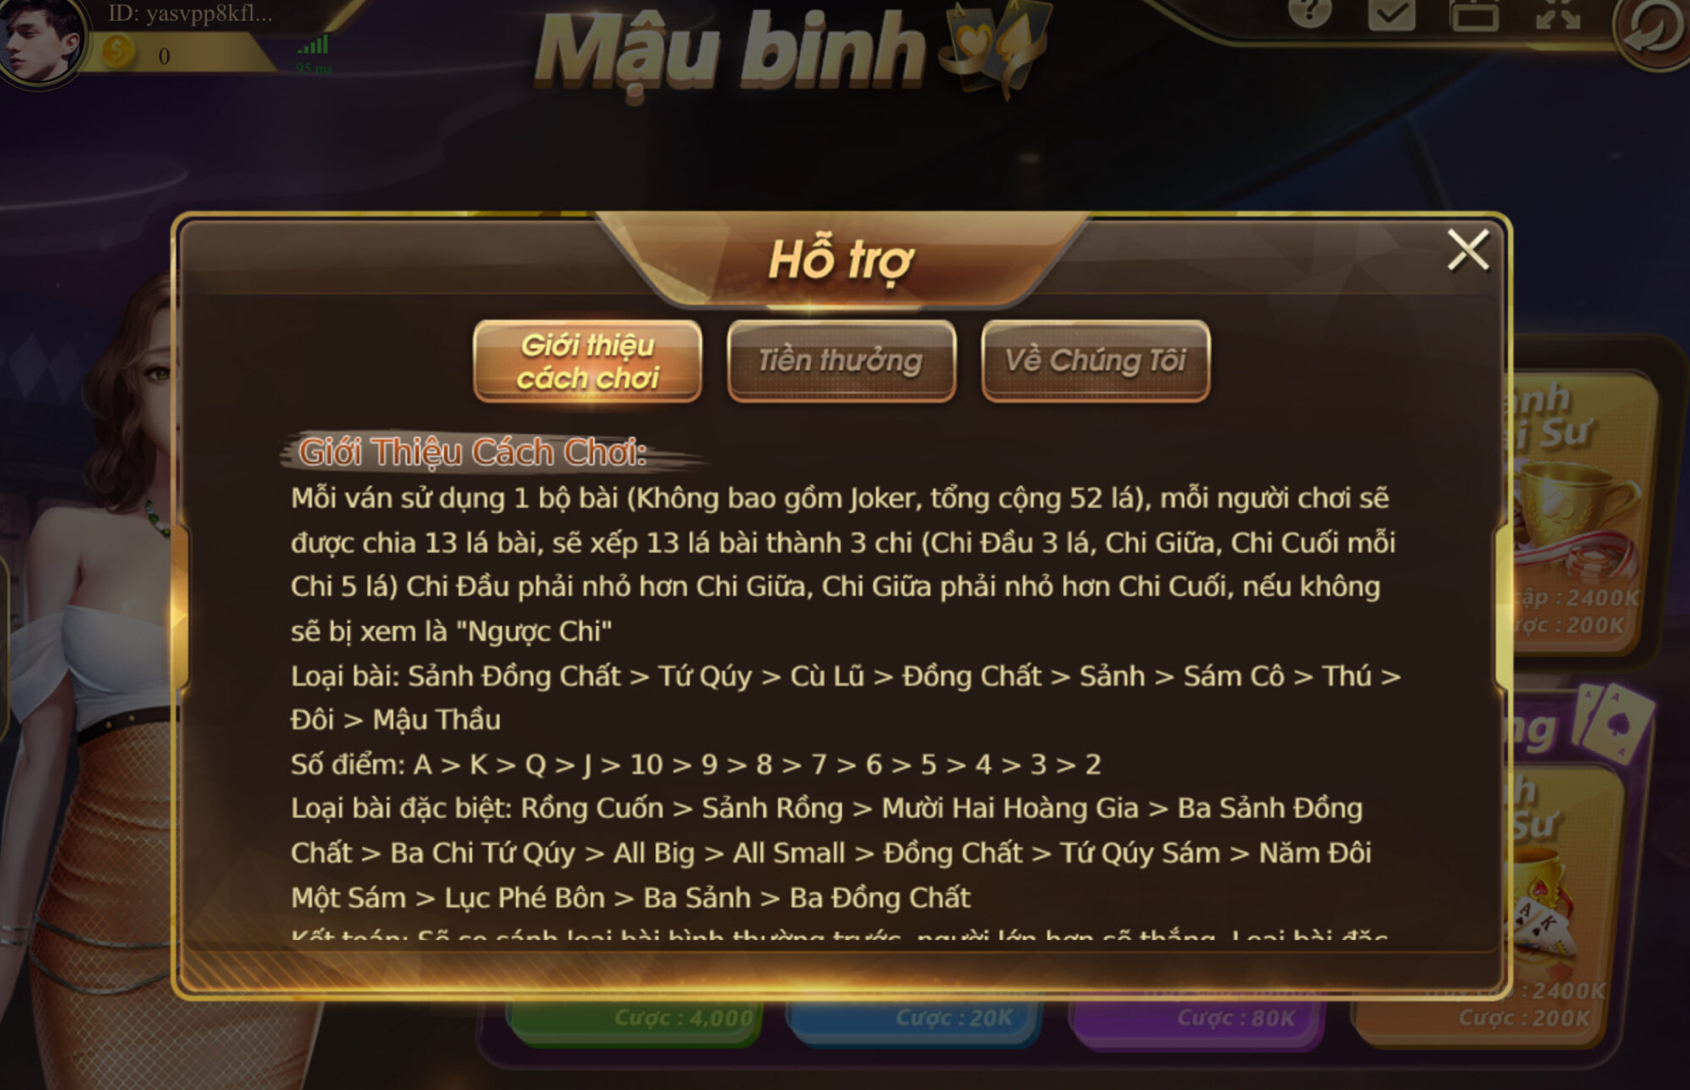 Khám phá luật chơi game bài Mậu Binh đến từ 789 club